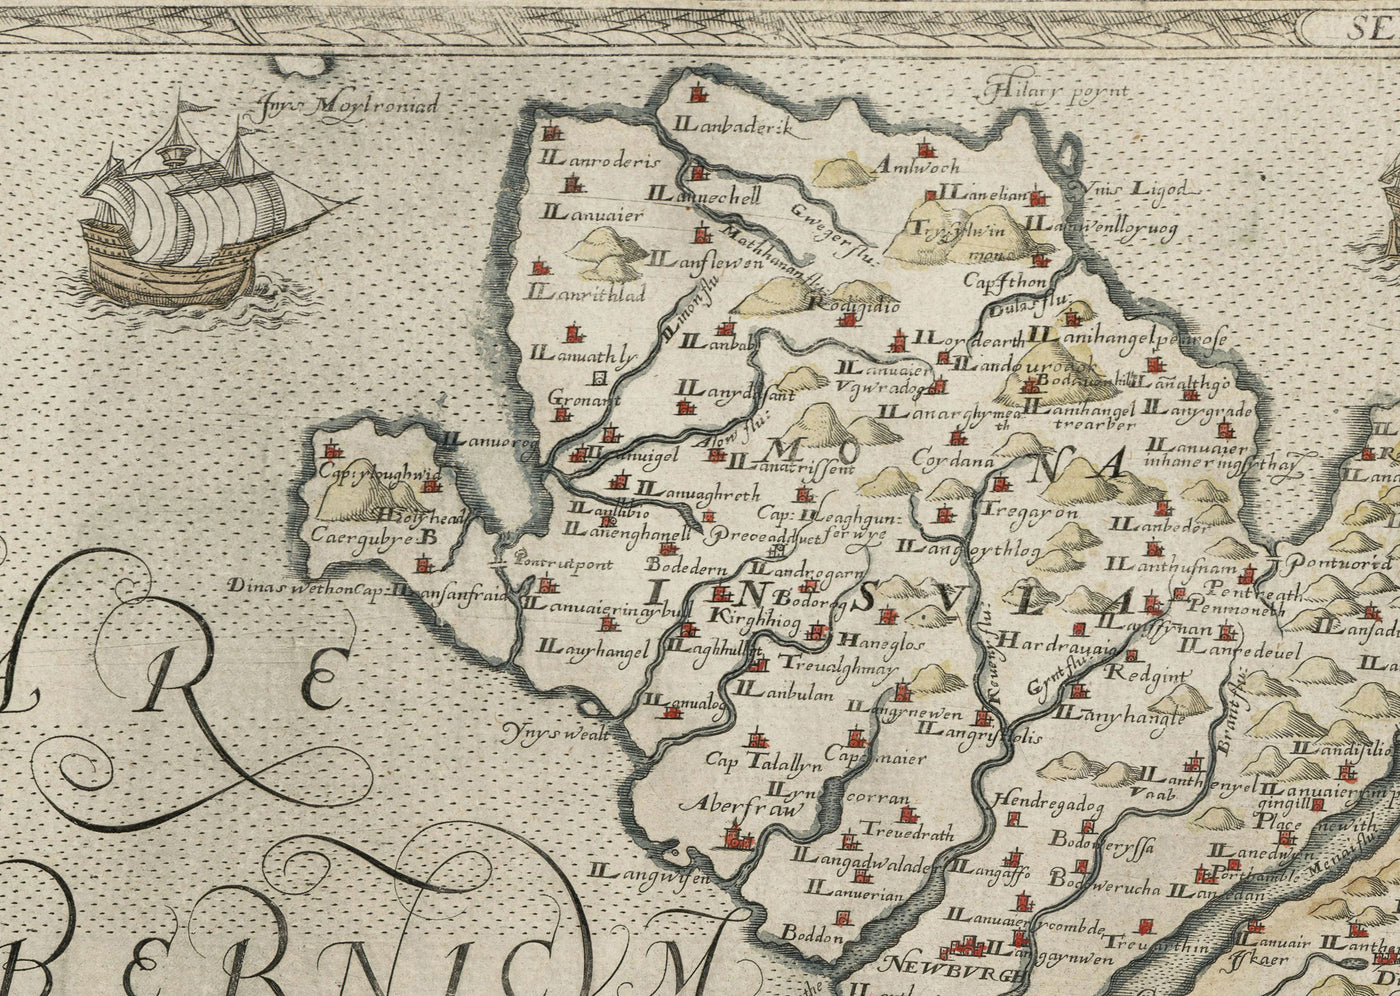 Première carte d'Anglesey et de Gwynedd, 1577 - Ancienne carte de Christopher Saxton - Bangor, Holyhead, Conwy, Caernarfon, Llandudno